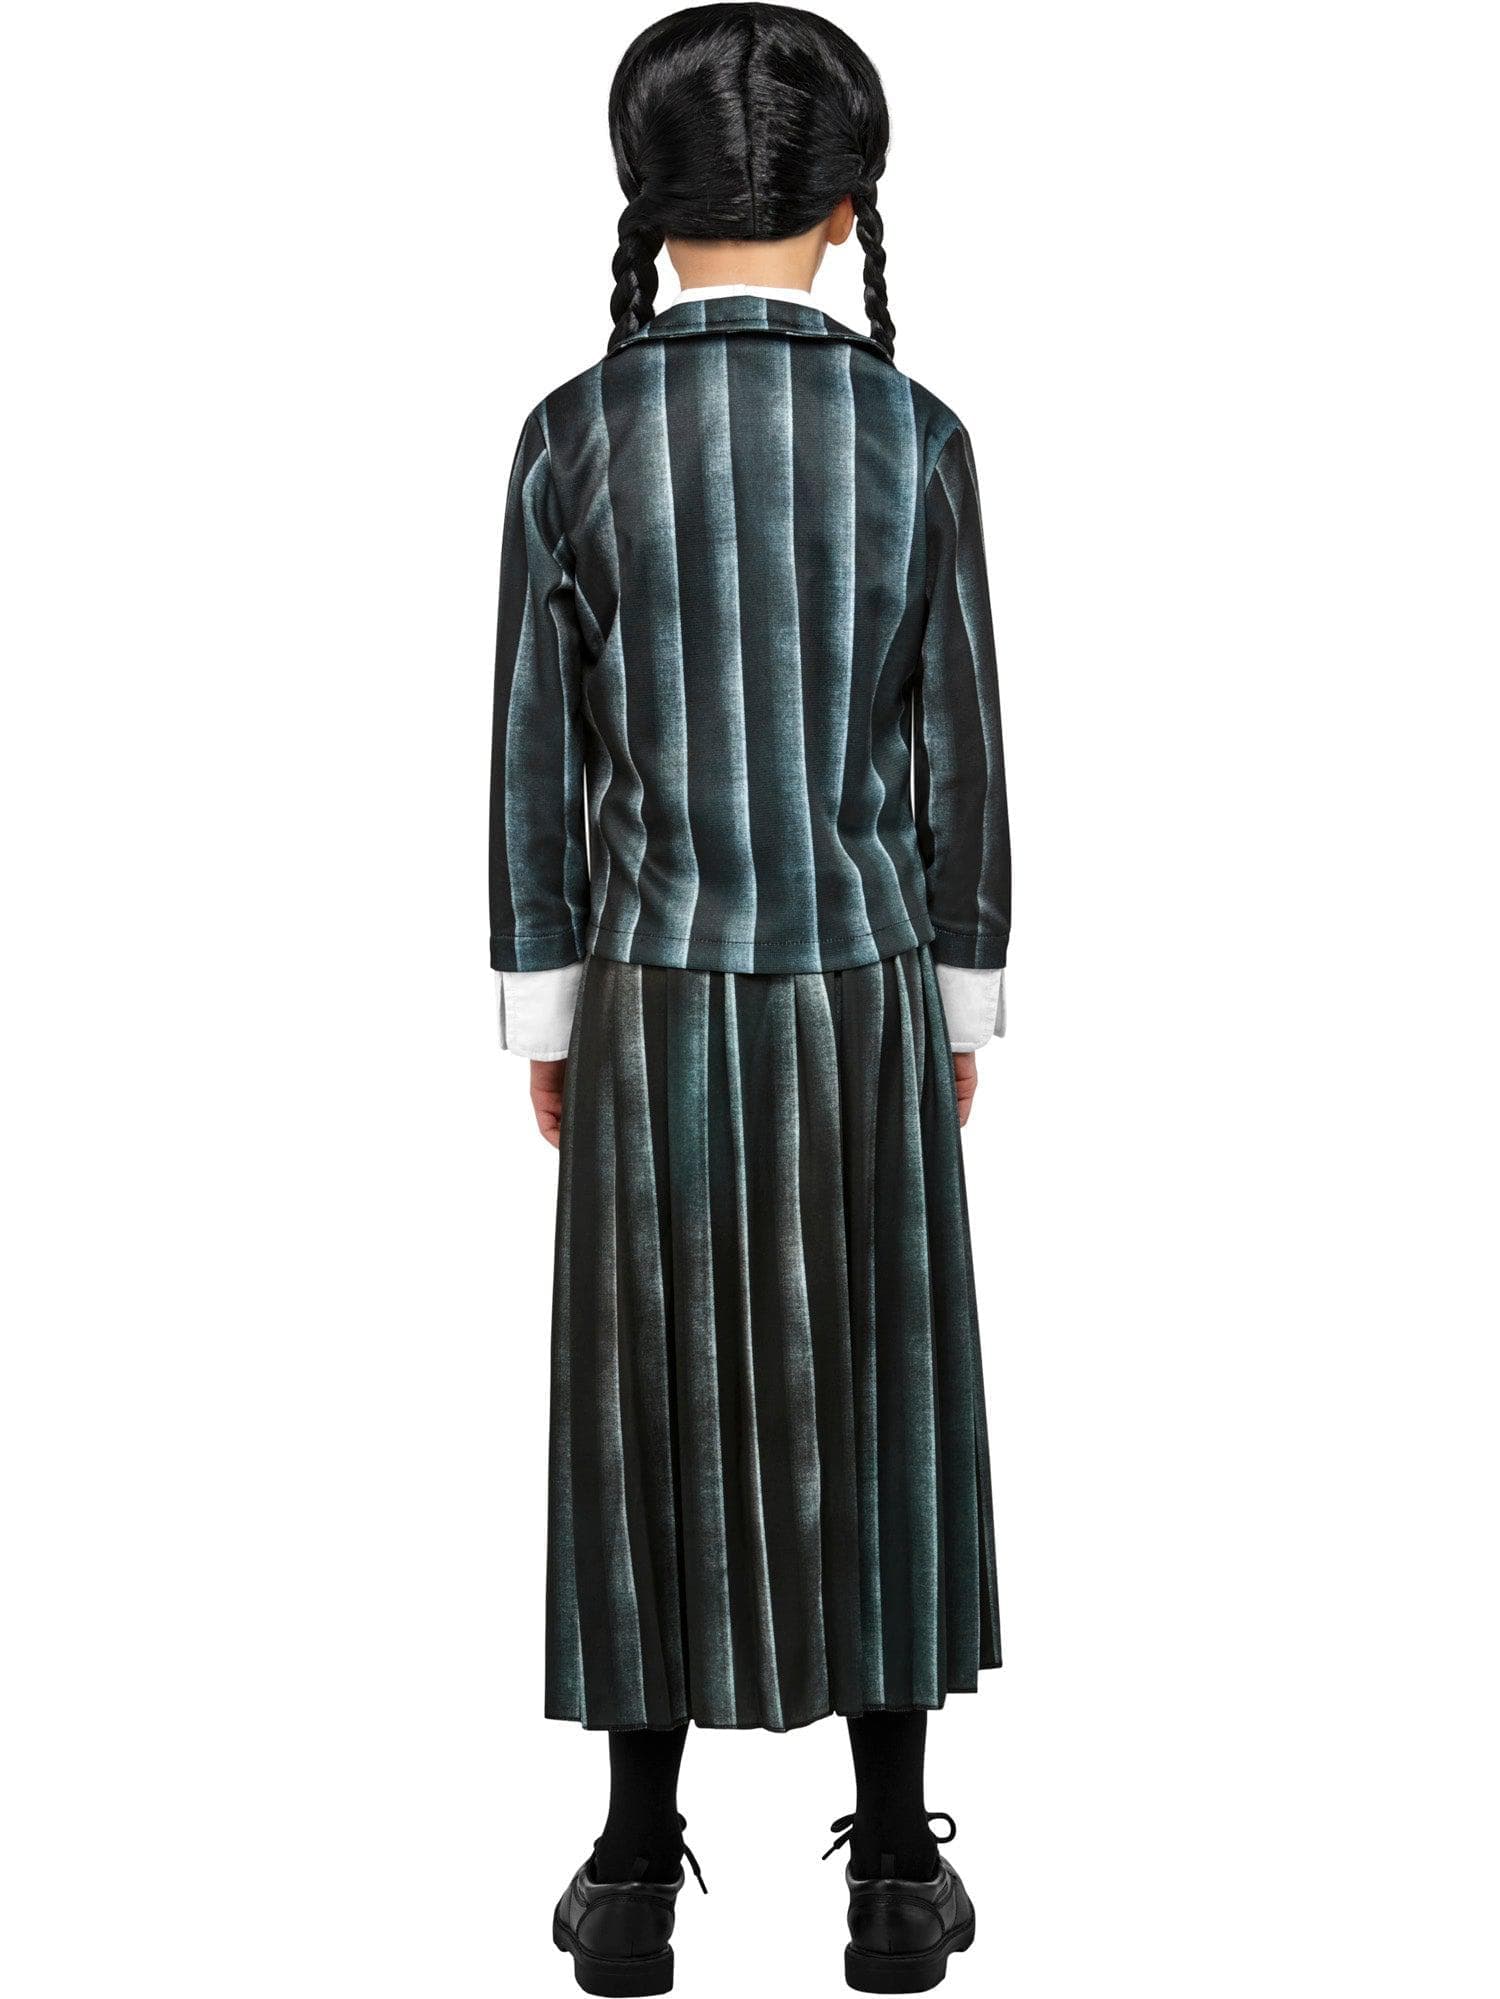 Wednesday Addams Nevermore Academy Uniform Kids Costume - costumes.com